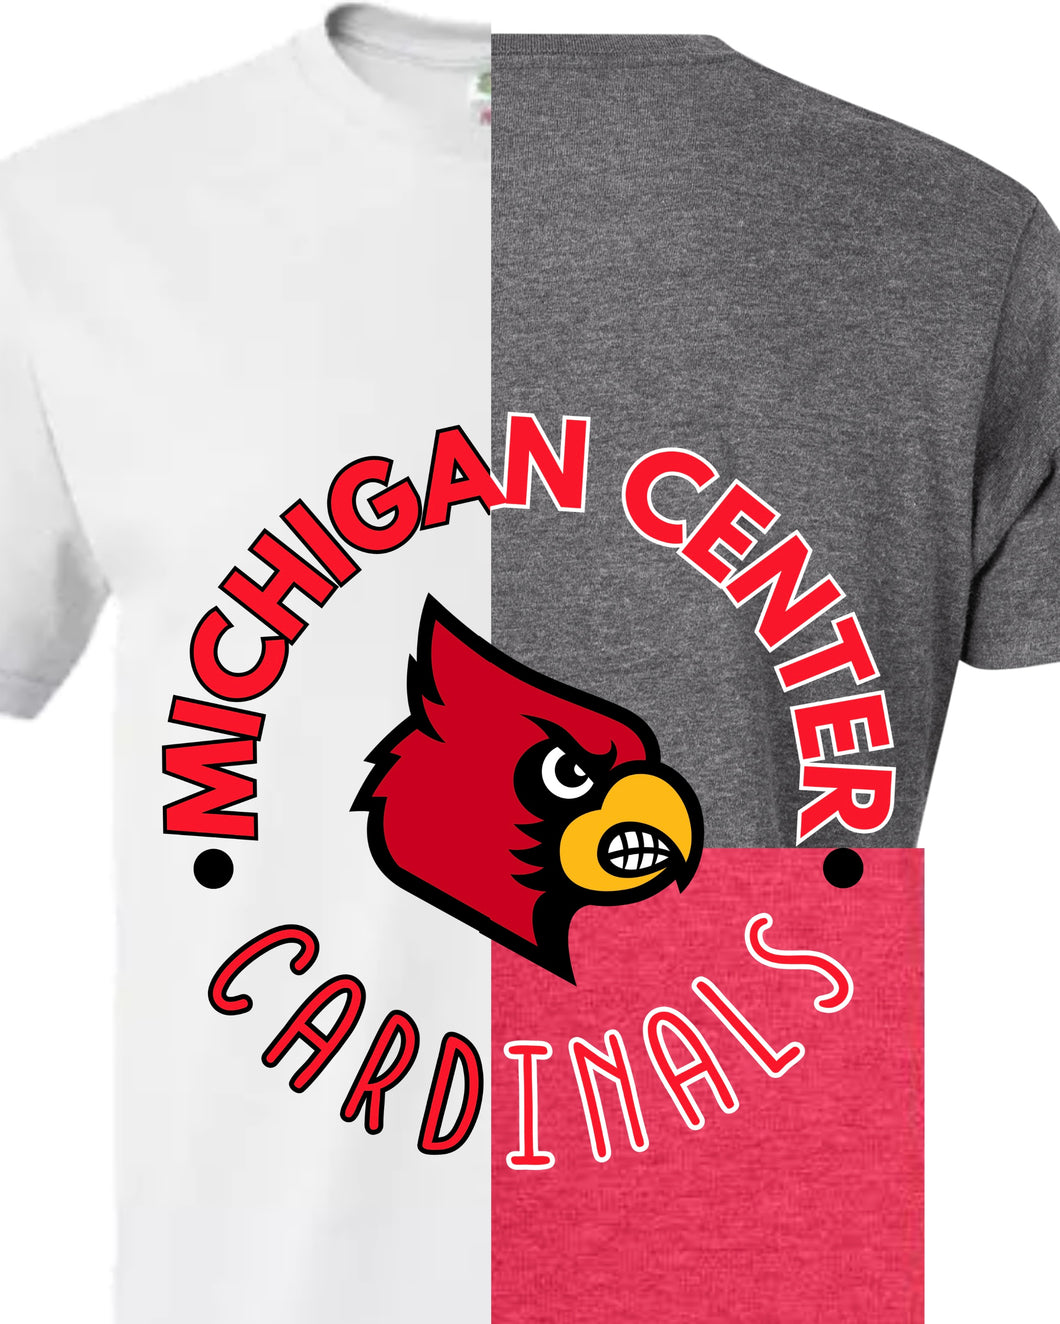 Michigan Center Cardinals Shirt